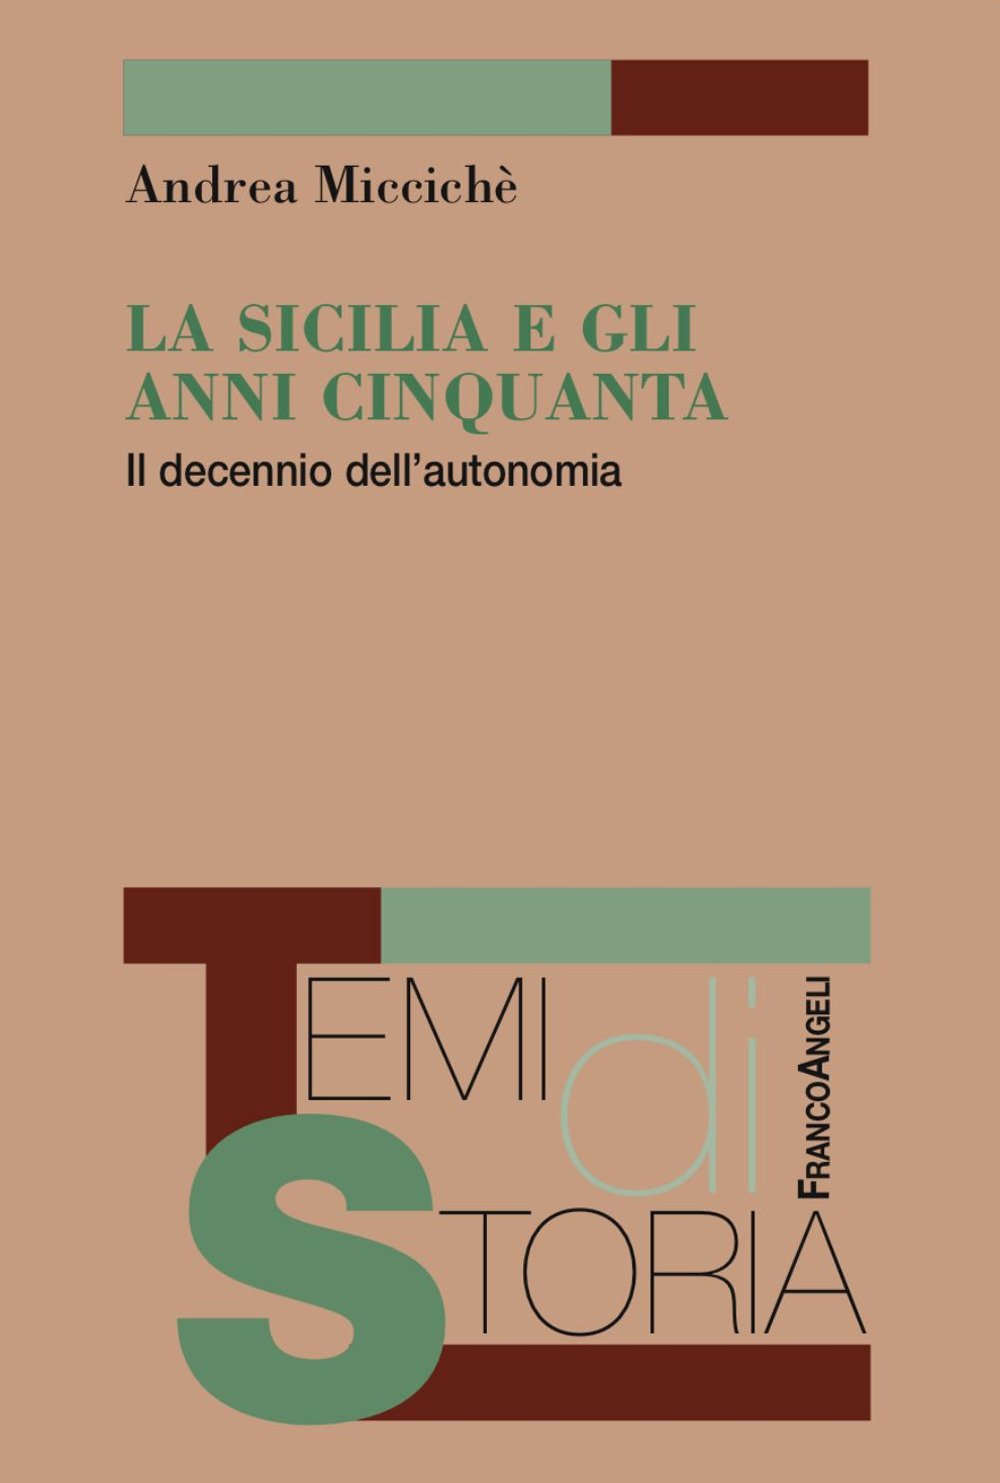 Andrea MICCICHÈ, <em>La Sicilia e gli anni Cinquanta. Il decennio dell’autonomia</em>, Milano, Franco Angeli, 2017, 262 pp.